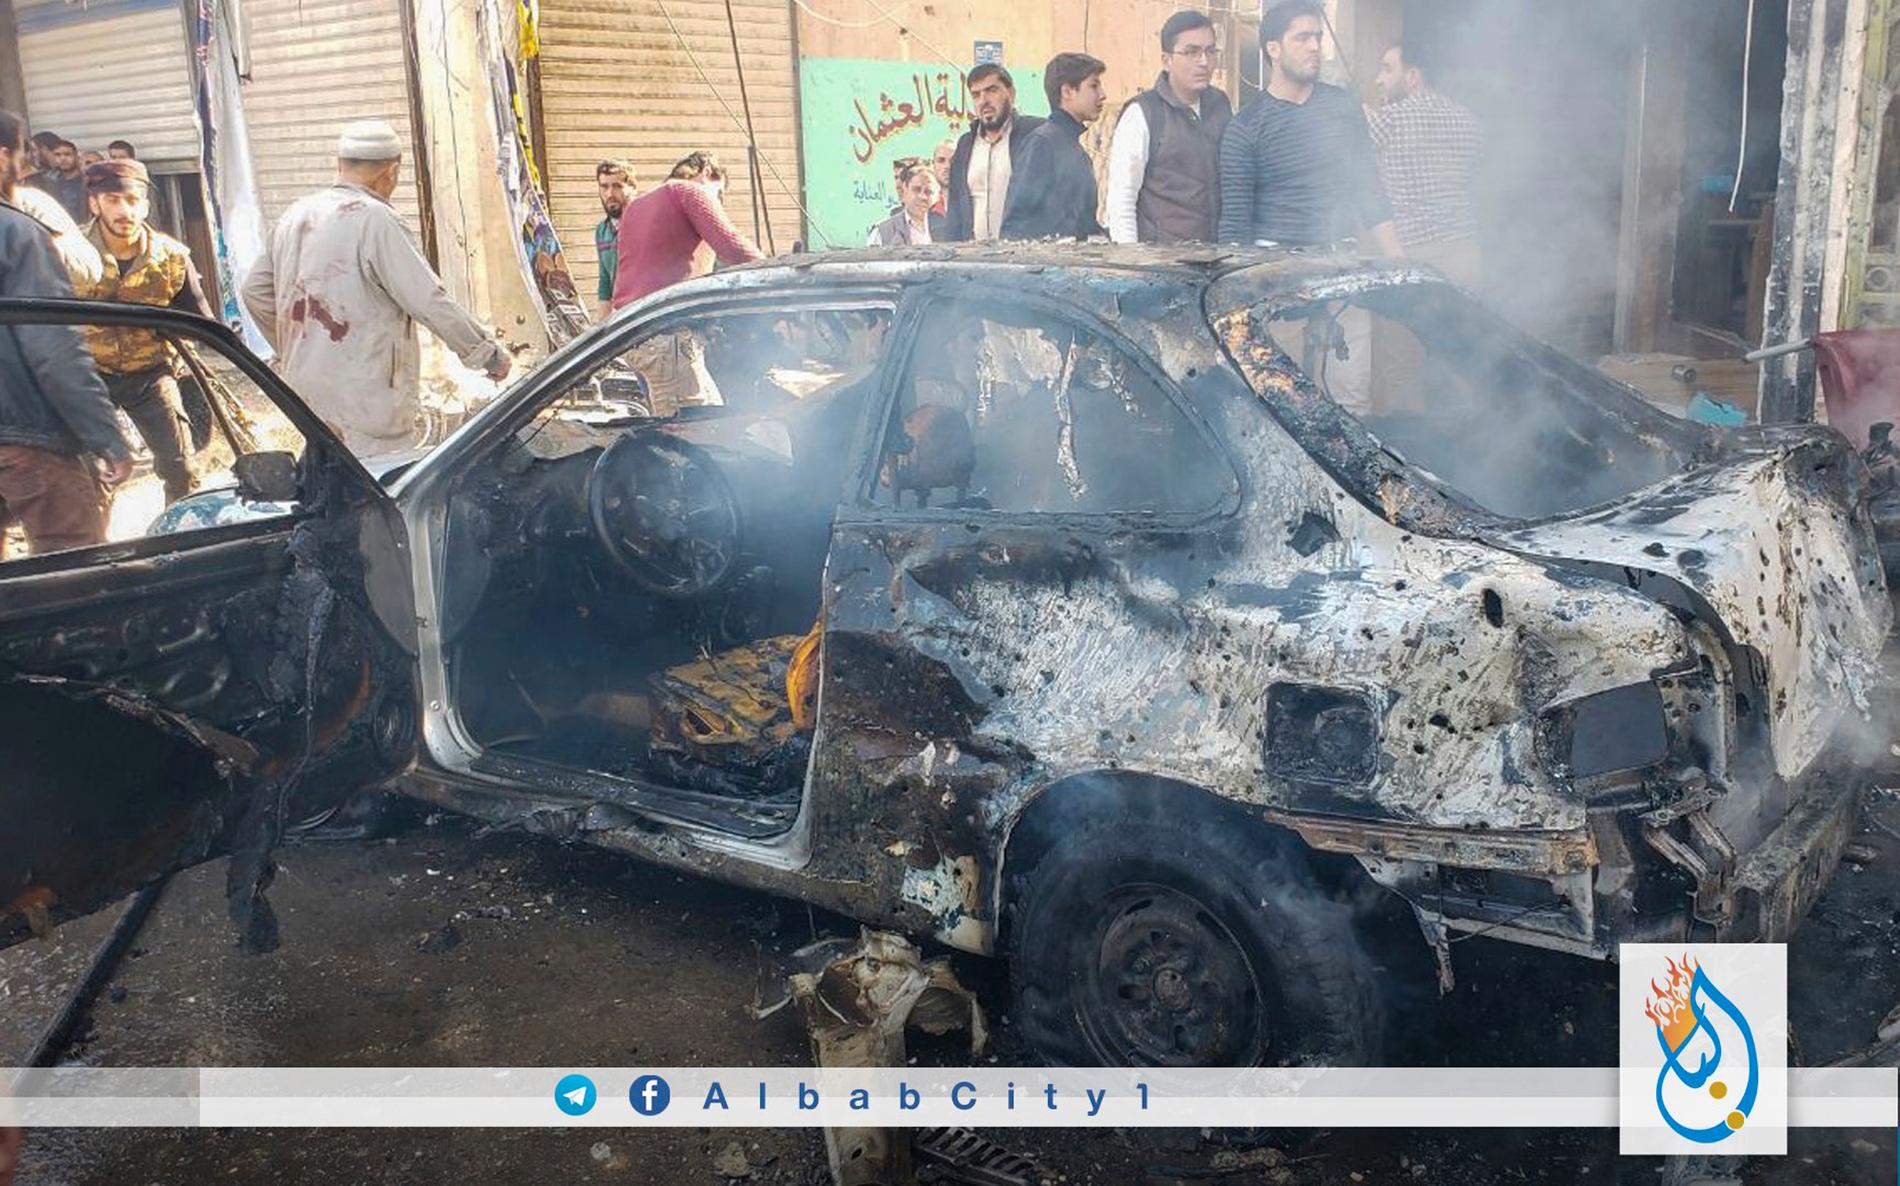 Människor bevittnar förödelsen efter bilbomsdådet i al-Bab i Syrien den 16 november. Bilden kommer från en oppositionell aktivistgrupp, men bildens äkthet har verifierats av nyhetsbyrån AP via andra källor.